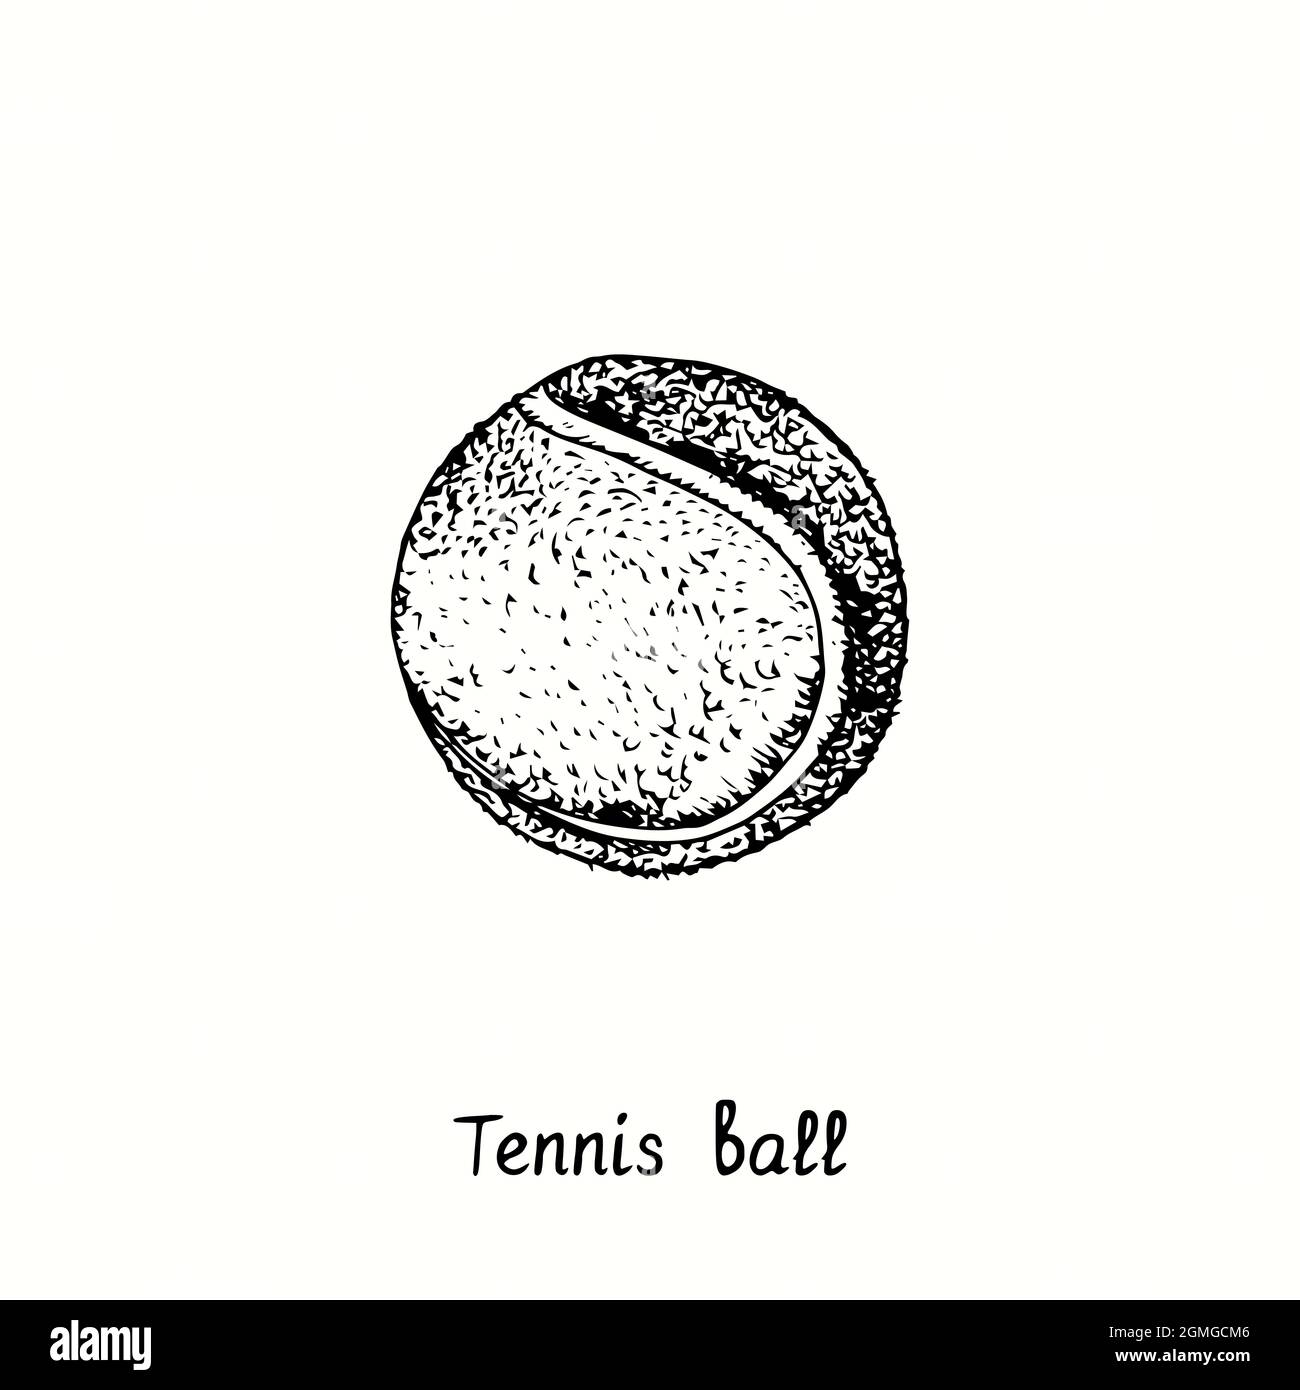 Balle de tennis. Dessin d'une boisée noire et blanche à l'encre Photo Stock  - Alamy